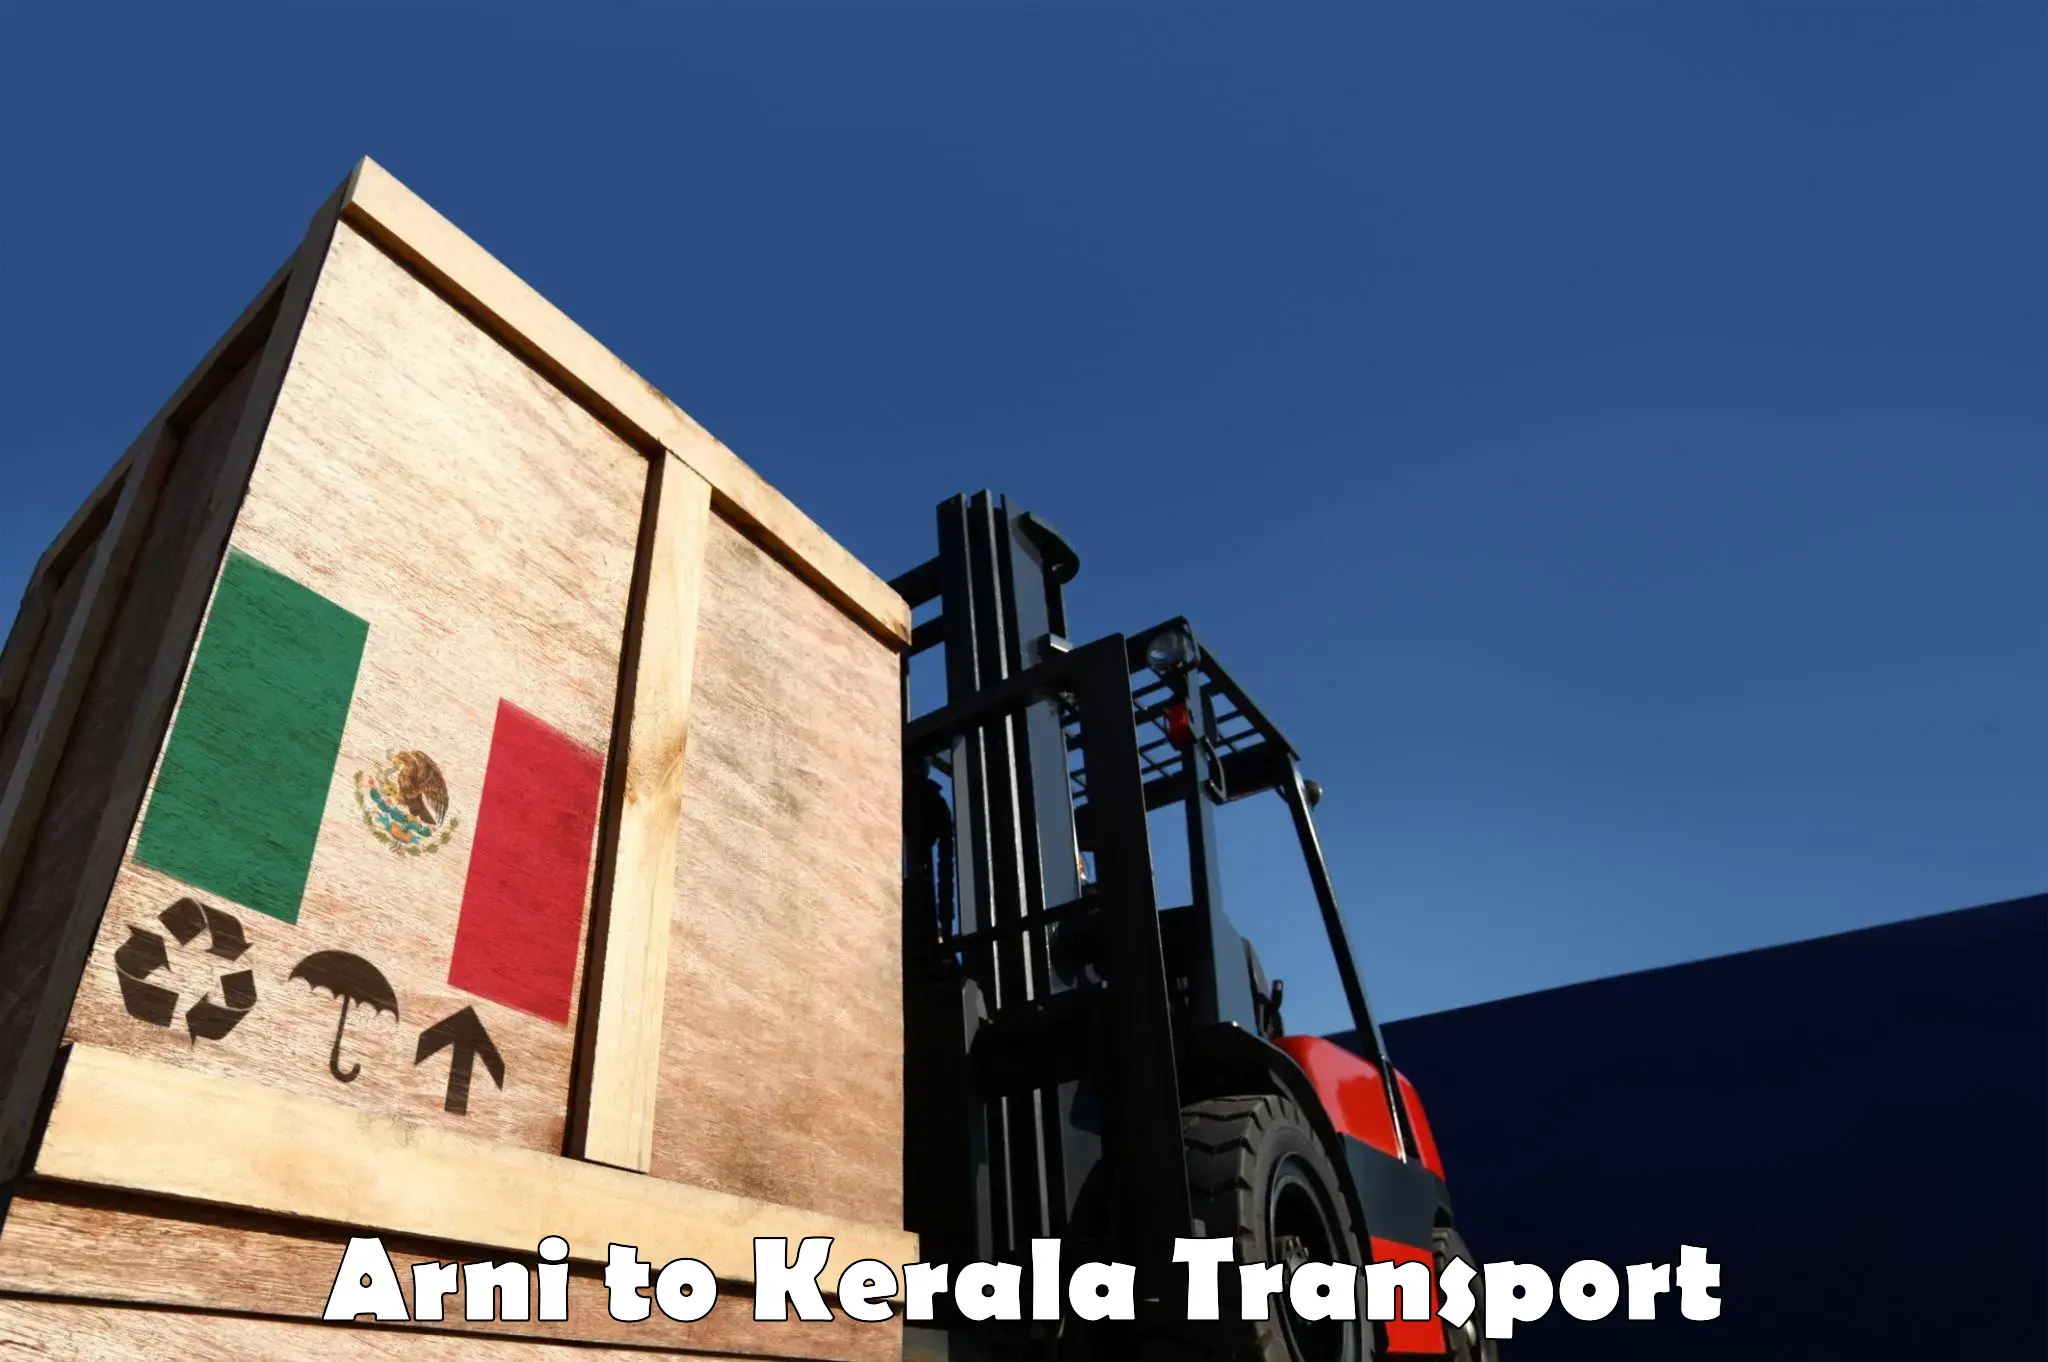 Express transport services Arni to Palai